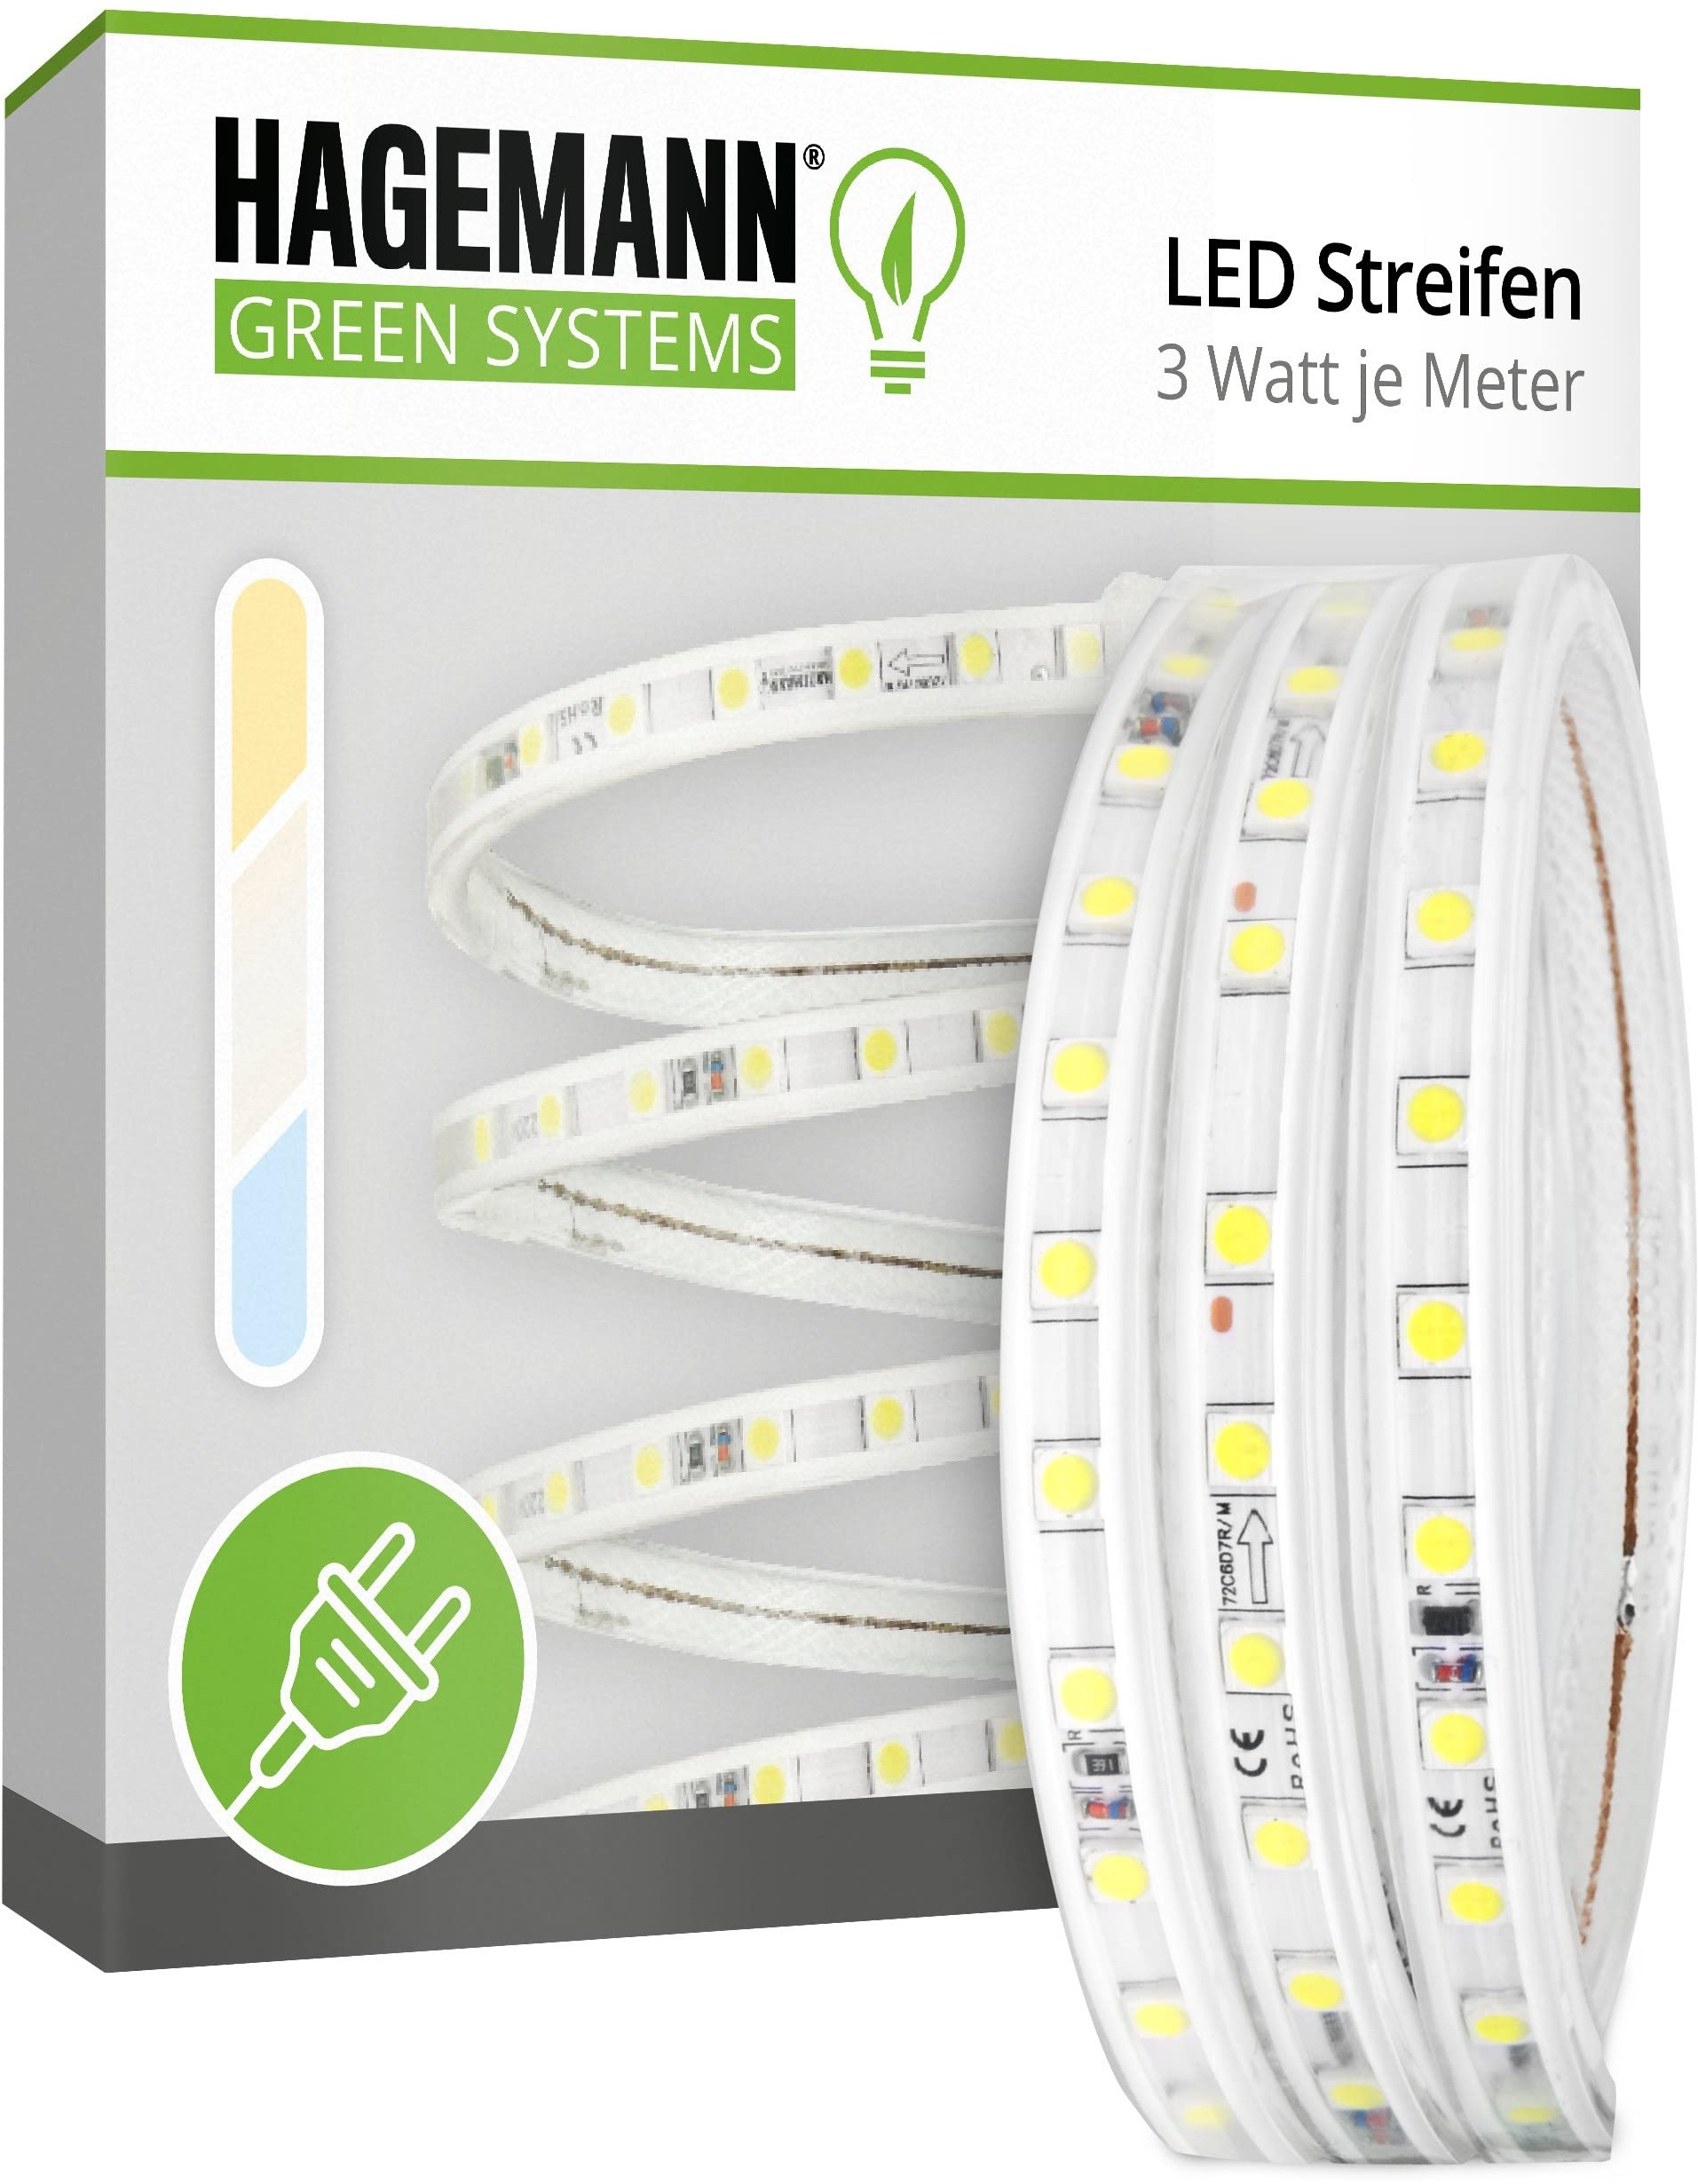 HAGEMANN® LED Streifen mit Stecker – IP65 5050 Lichtleiste – LED Strip 230V (19 Meter, neutralweiß)